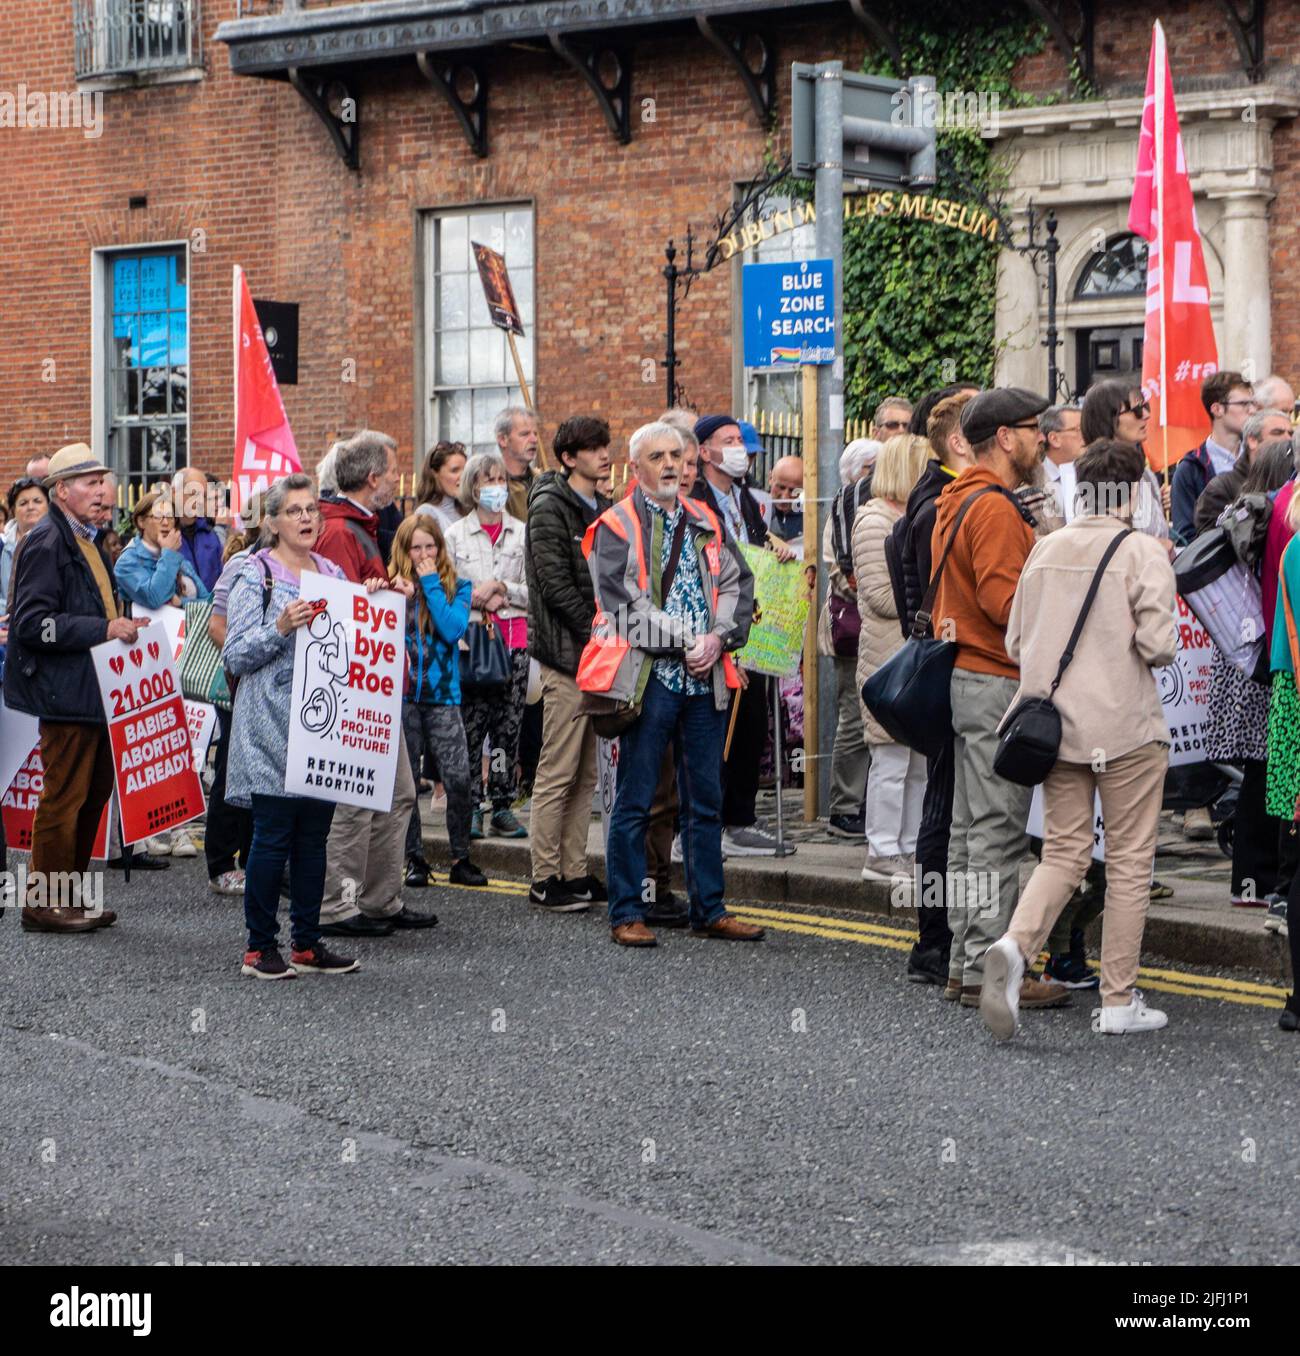 Un rally pro vida en Parnell Square en Dublín, Irlanda. Un cartel hace referencia al caso Roe V Wade, recientemente revocado en la Corte Suprema de los Estados Unidos. Foto de stock